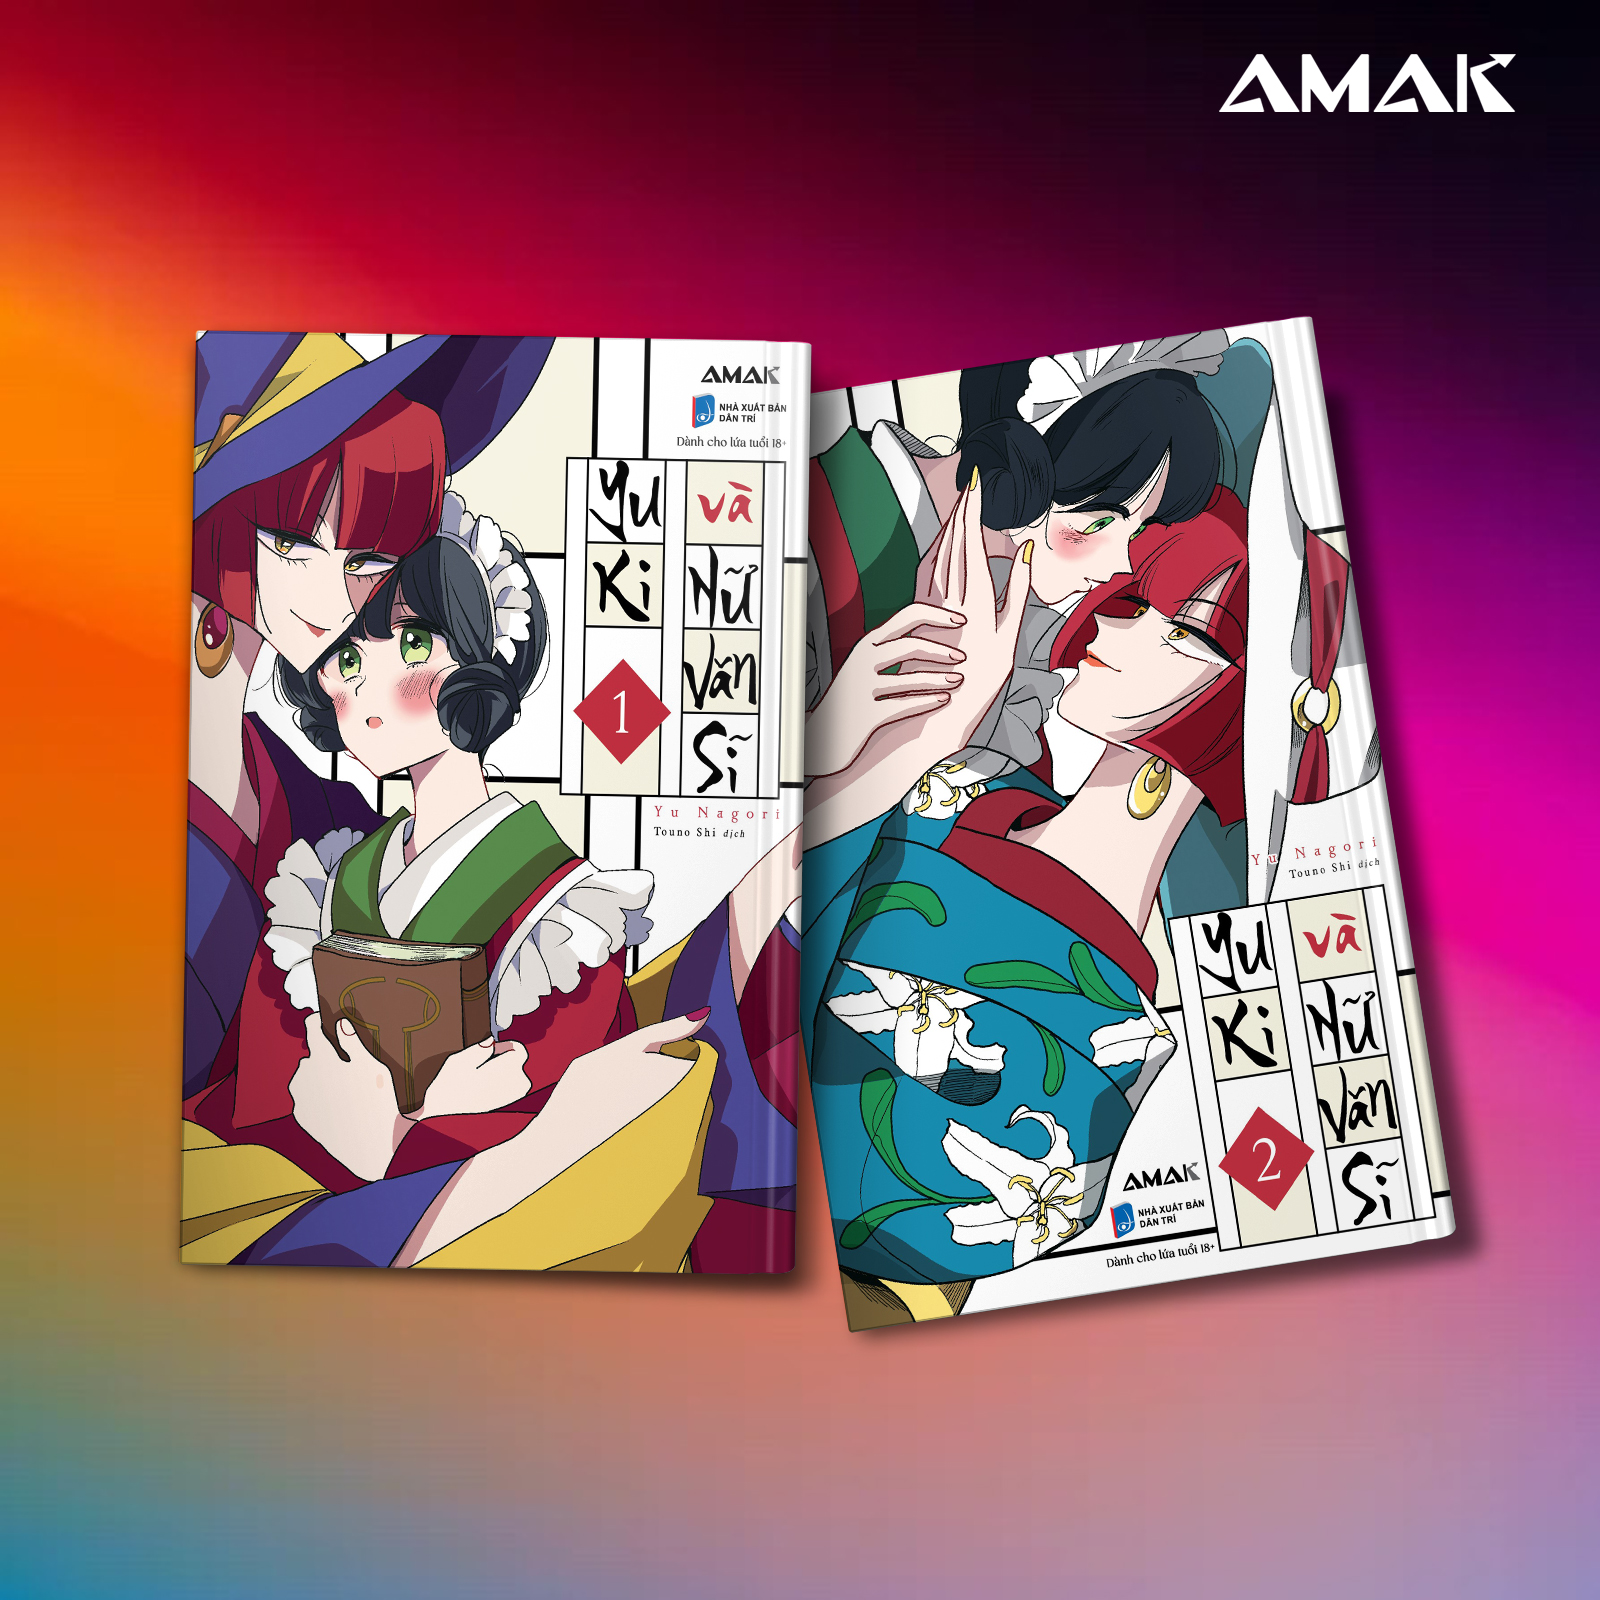 [Manga] Yuki và Nữ Văn Sĩ - Combo 2 tập - Amakbooks